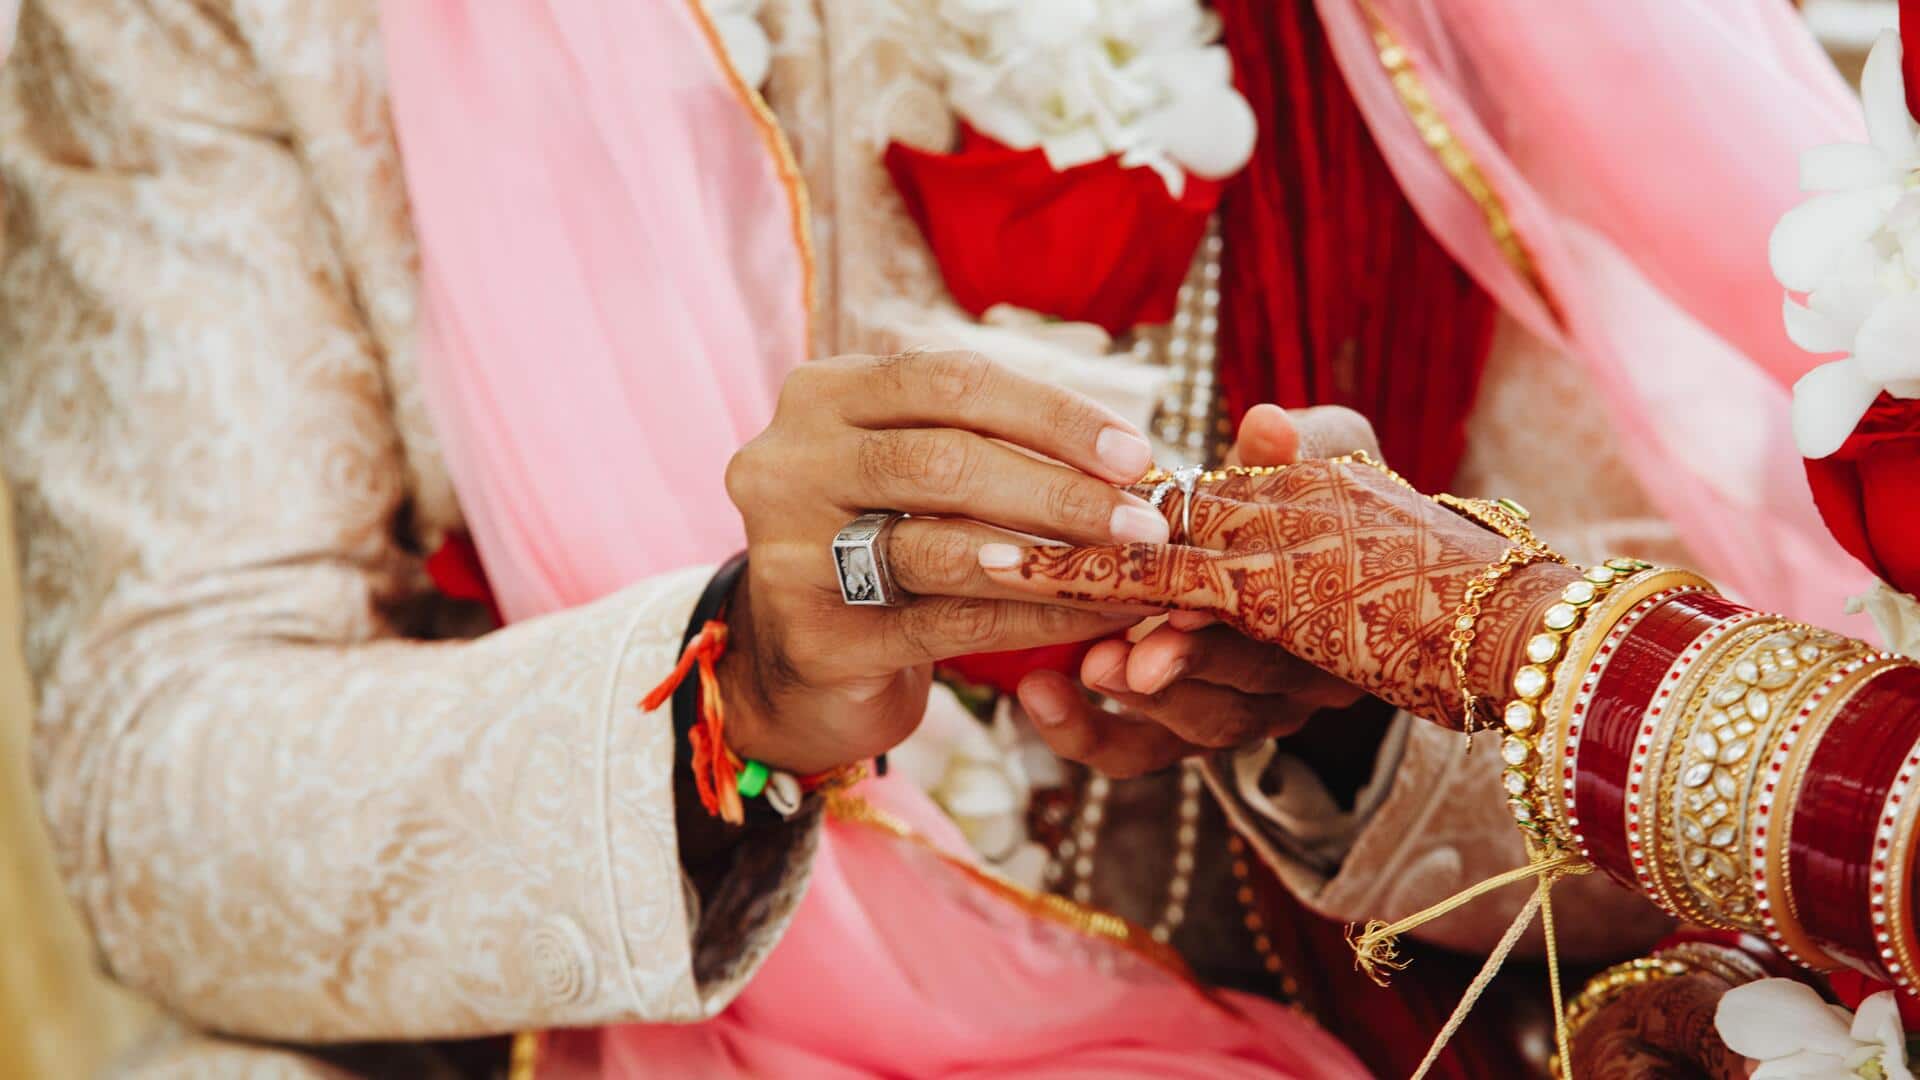 भोपाल: 103 साल के व्यक्ति ने की तीसरी शादी, 54 साल छोटी है पत्नी